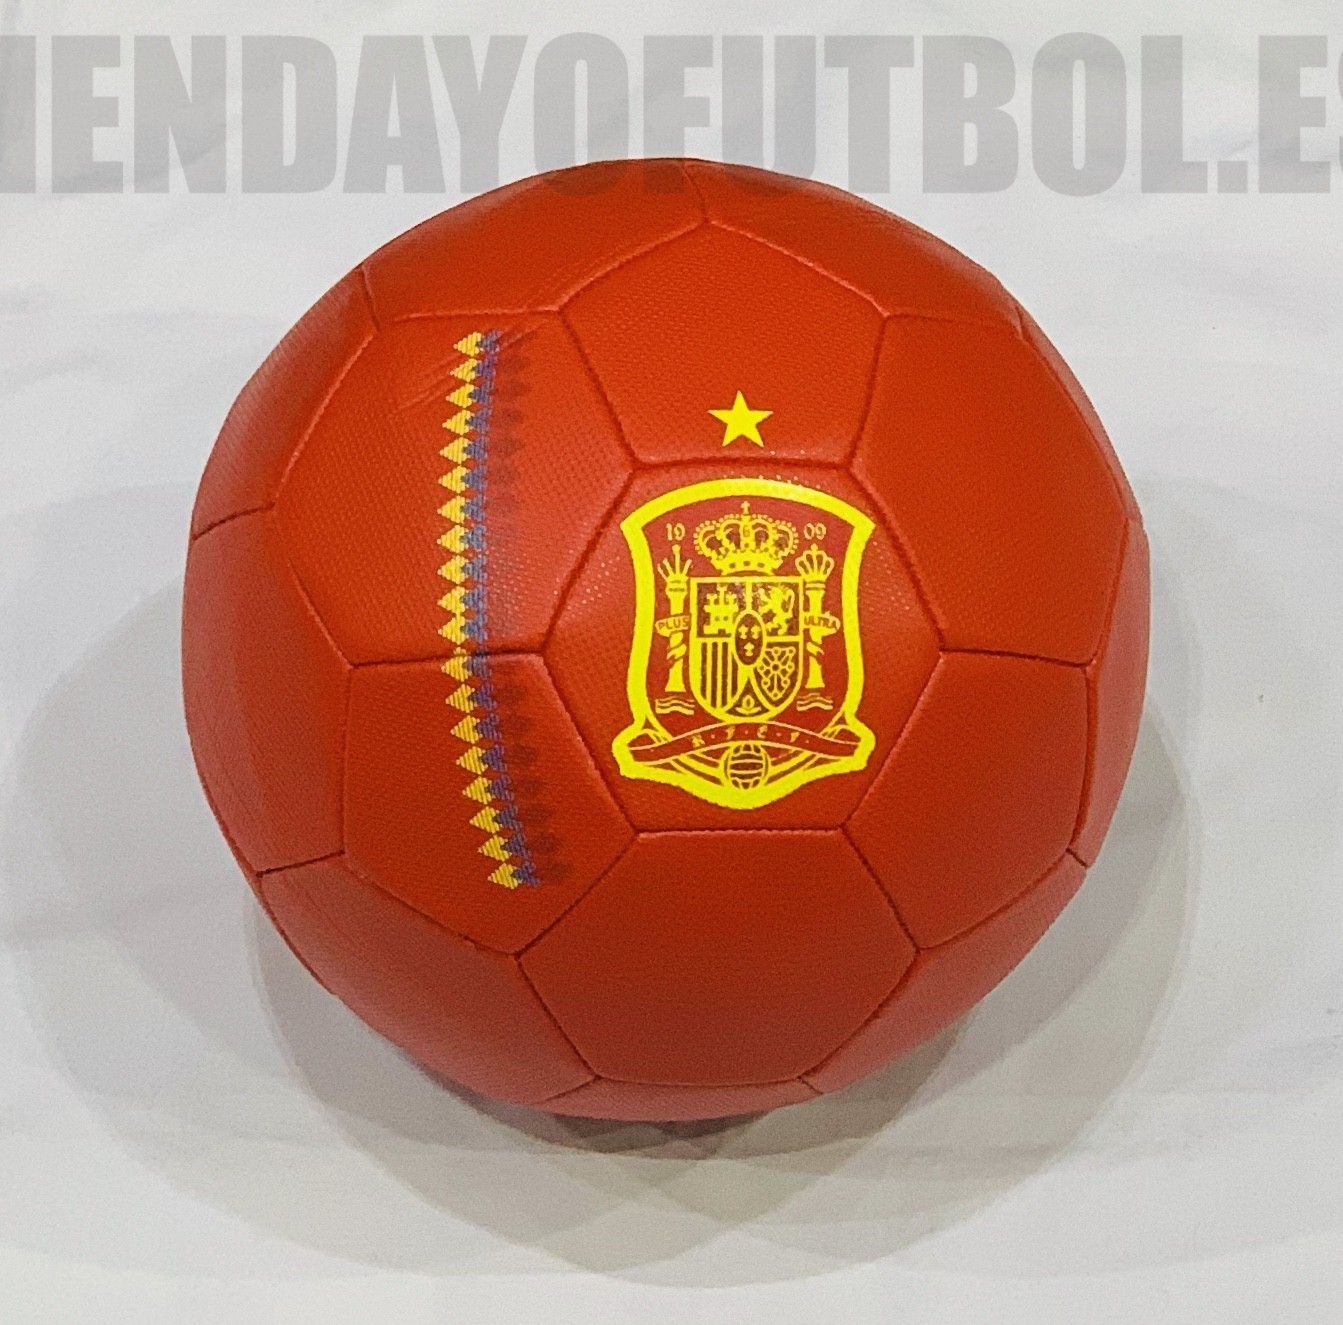 Balon de la seleccion española